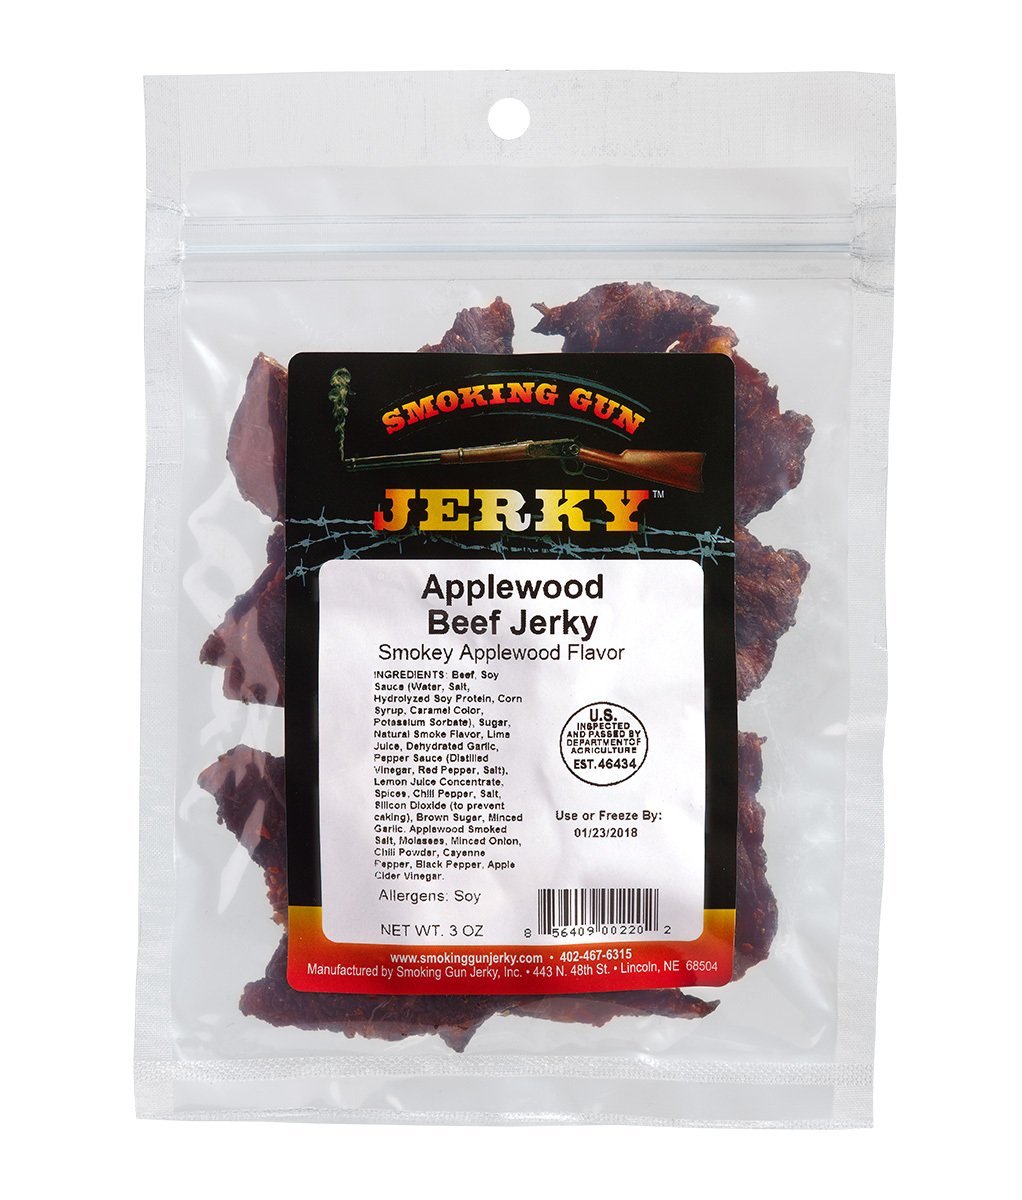 Applewood Beef Jerky, 2.75oz. Pkg.